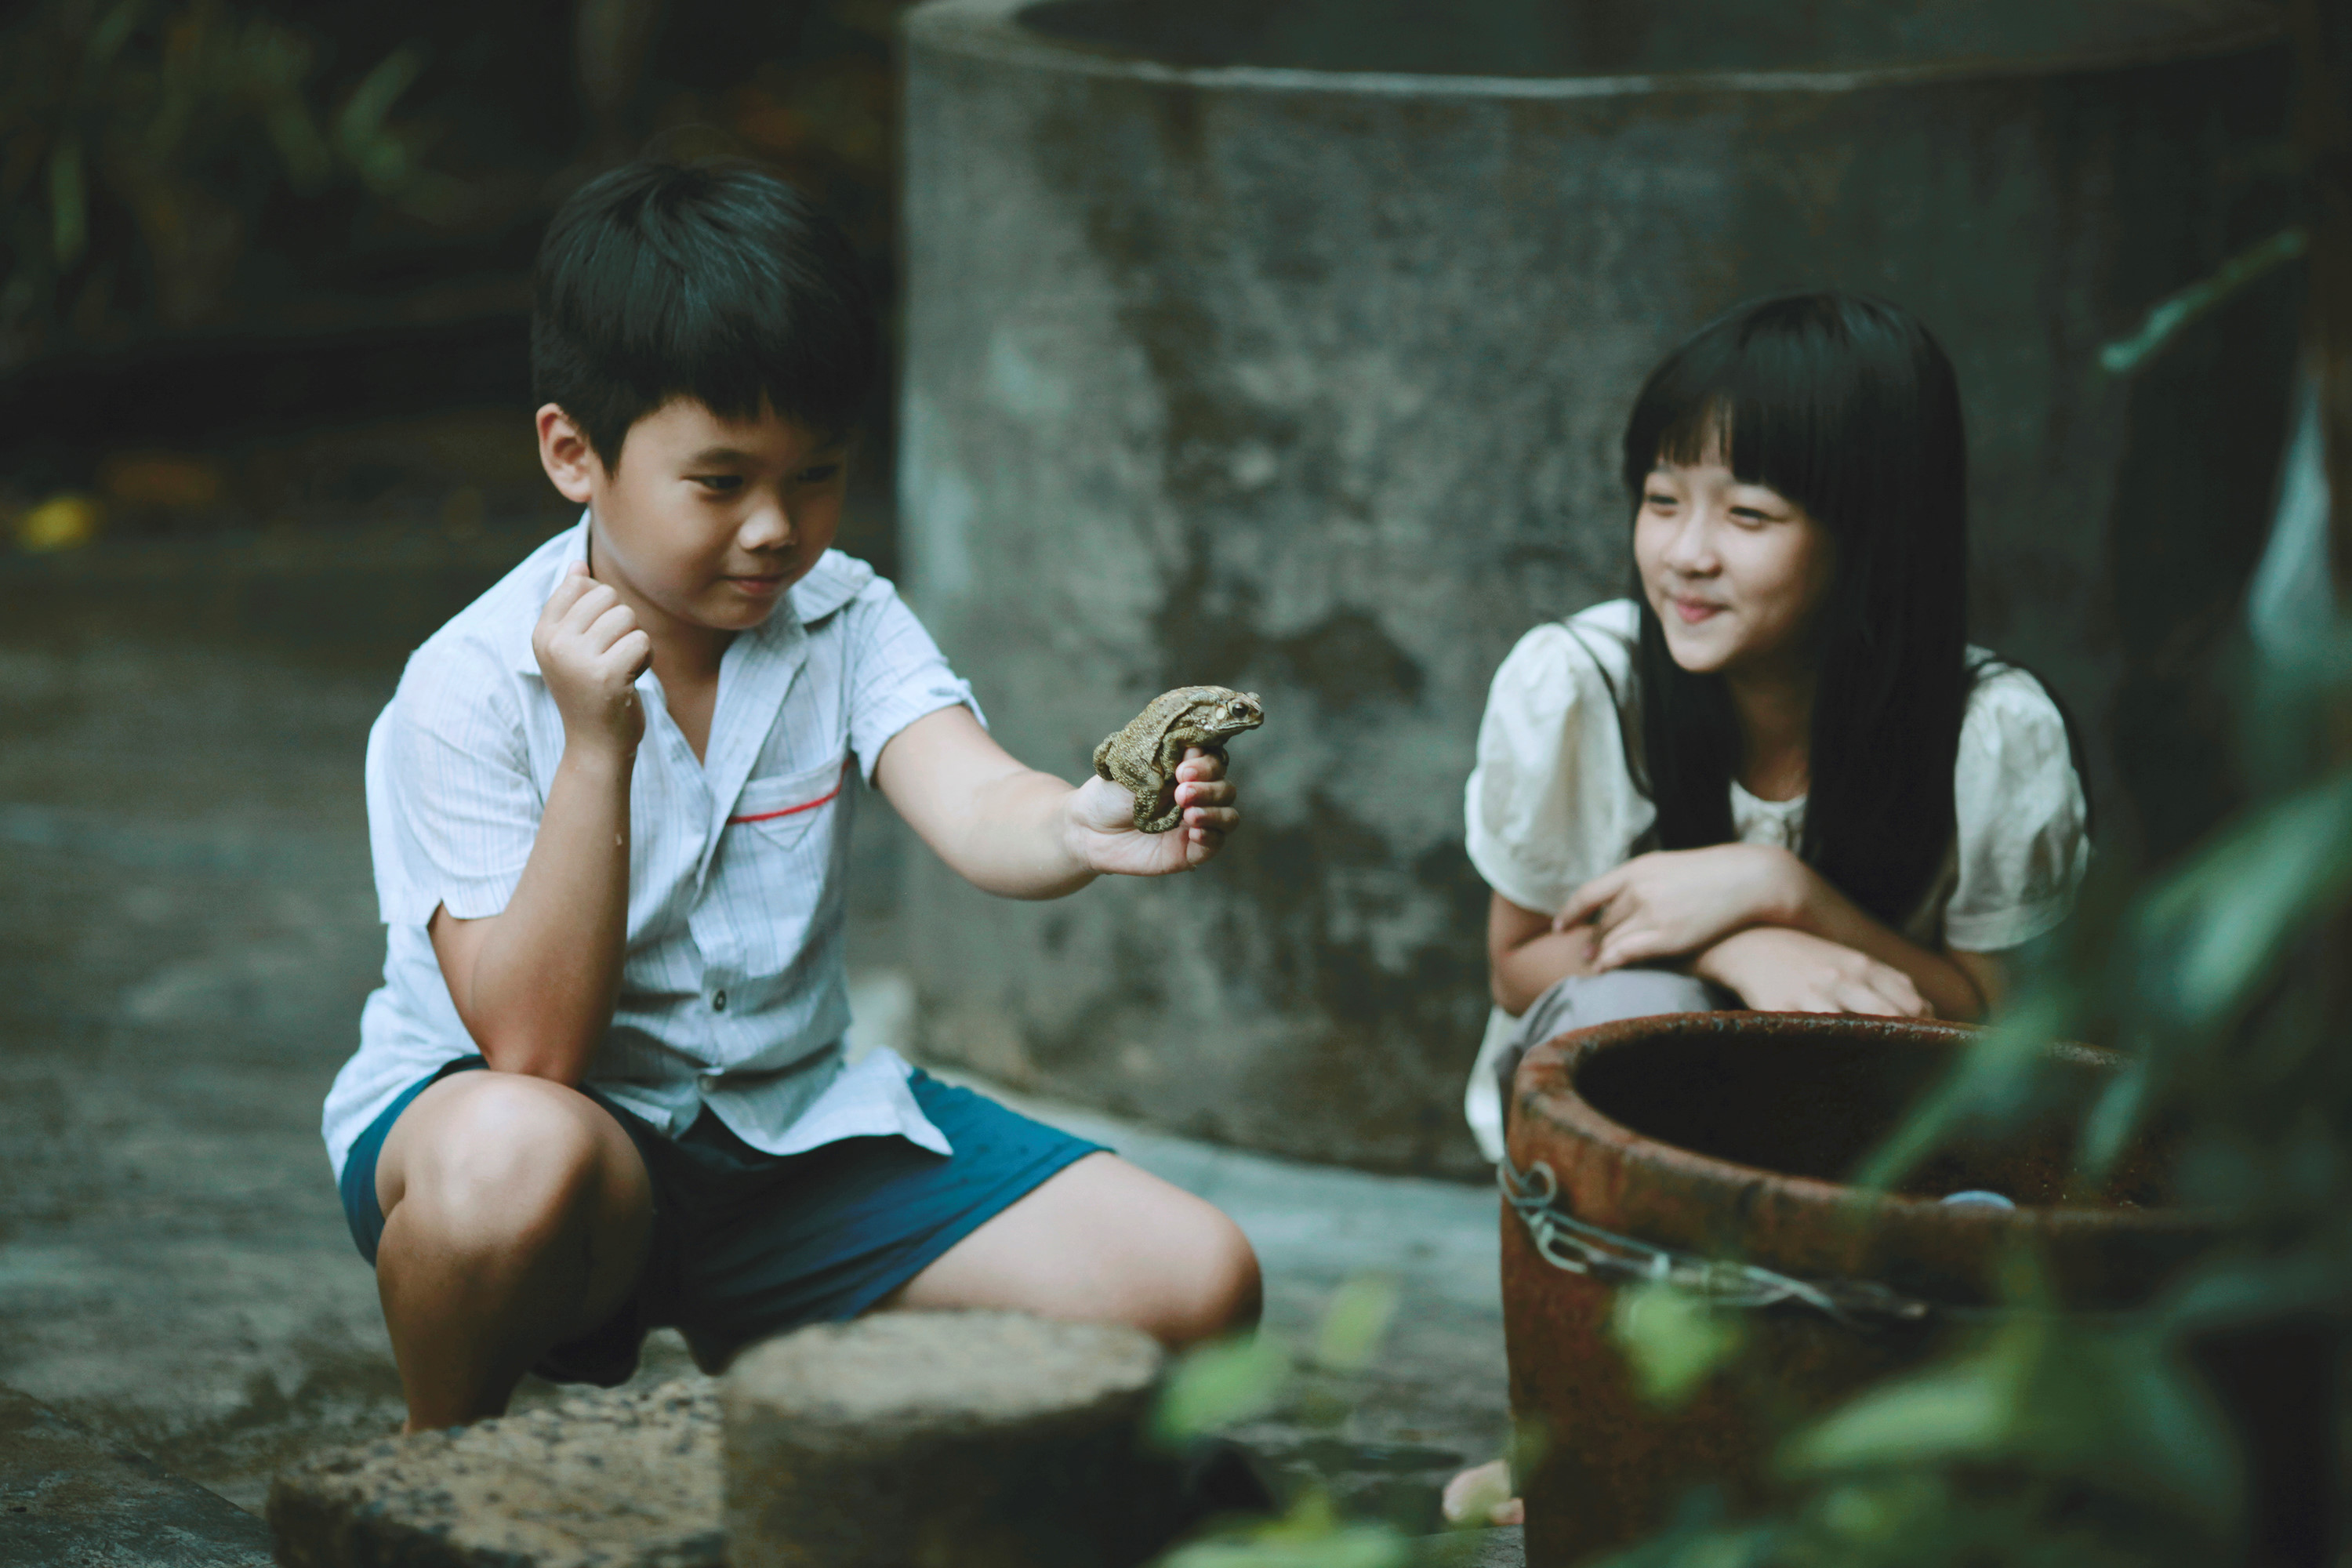 Điện ảnh Việt Nam đang phát triển với những bộ phim chất lượng và nhiều tác phẩm đạt giải thưởng quốc tế. Hãy xem những hình ảnh tuyệt đẹp của các ngôi sao trong ngành điện ảnh Việt.